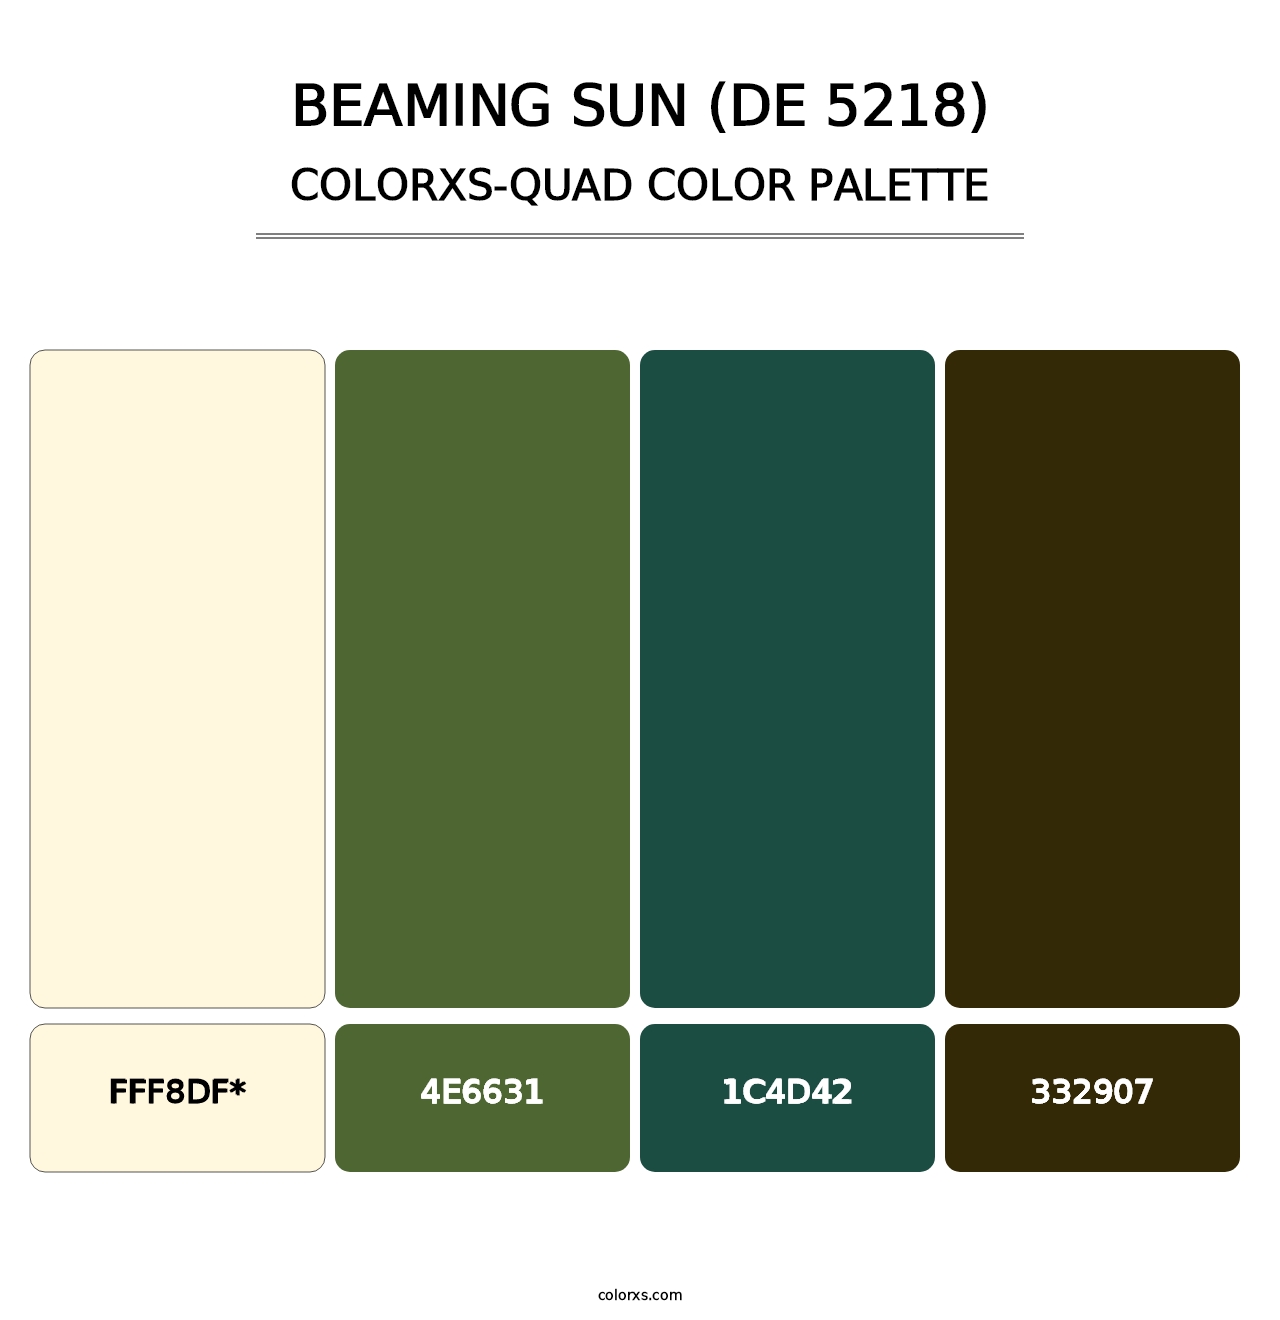 Beaming Sun (DE 5218) - Colorxs Quad Palette